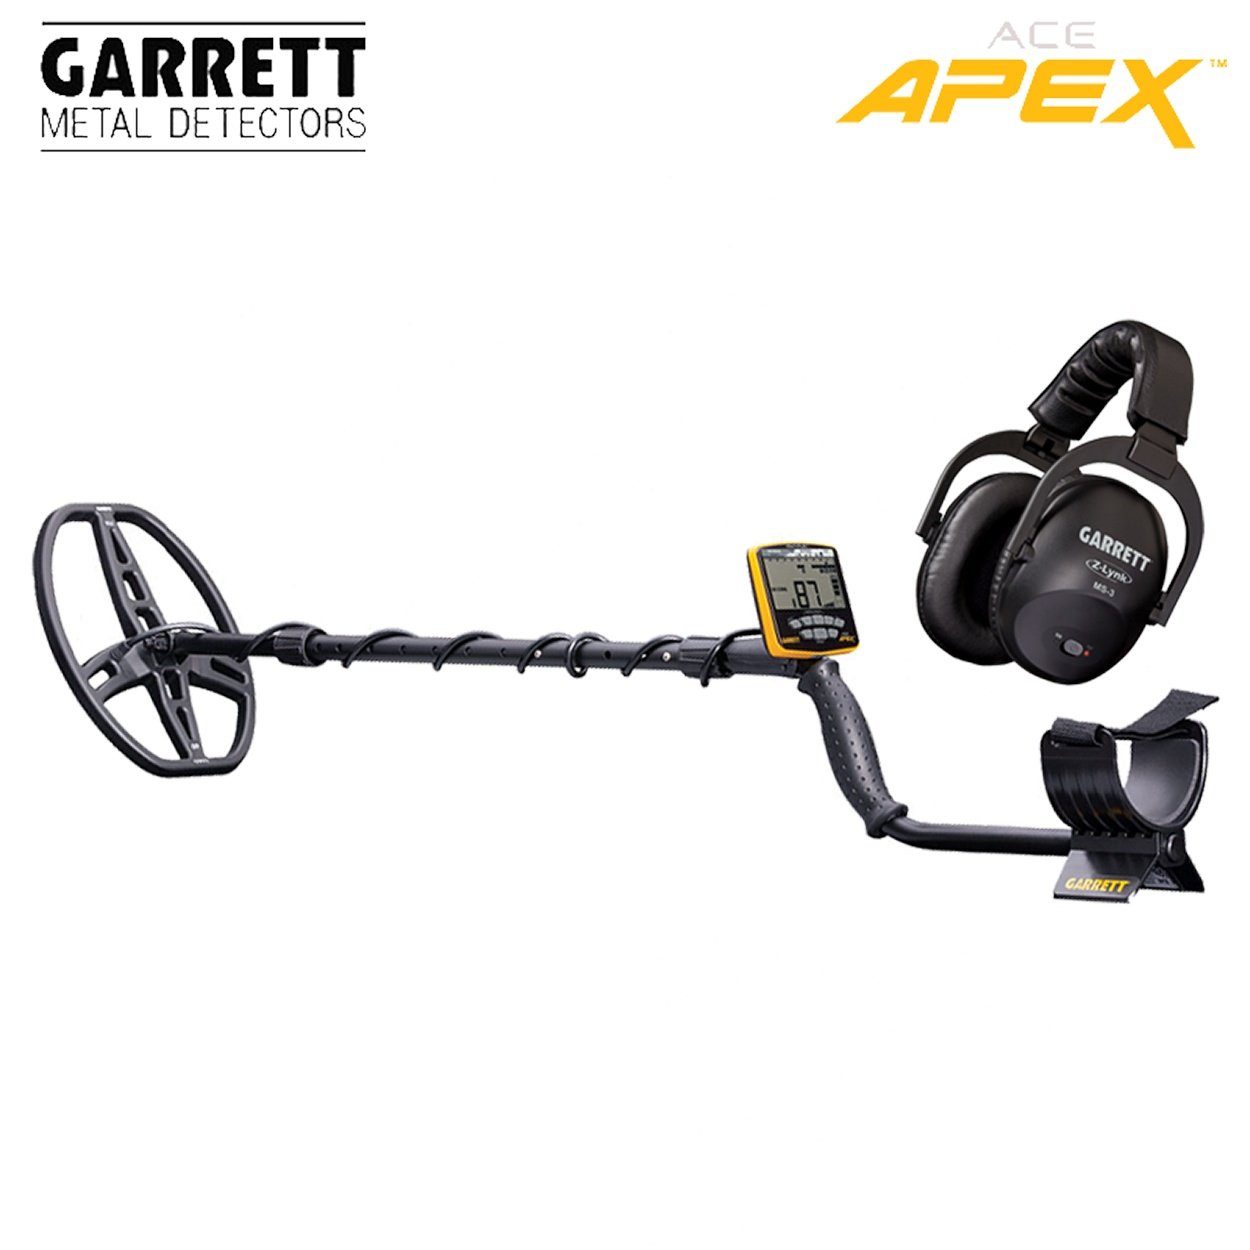 Metalldetektor APEX Ace Metalldetektor Garrett Garrett Pack) Raider (Wireless